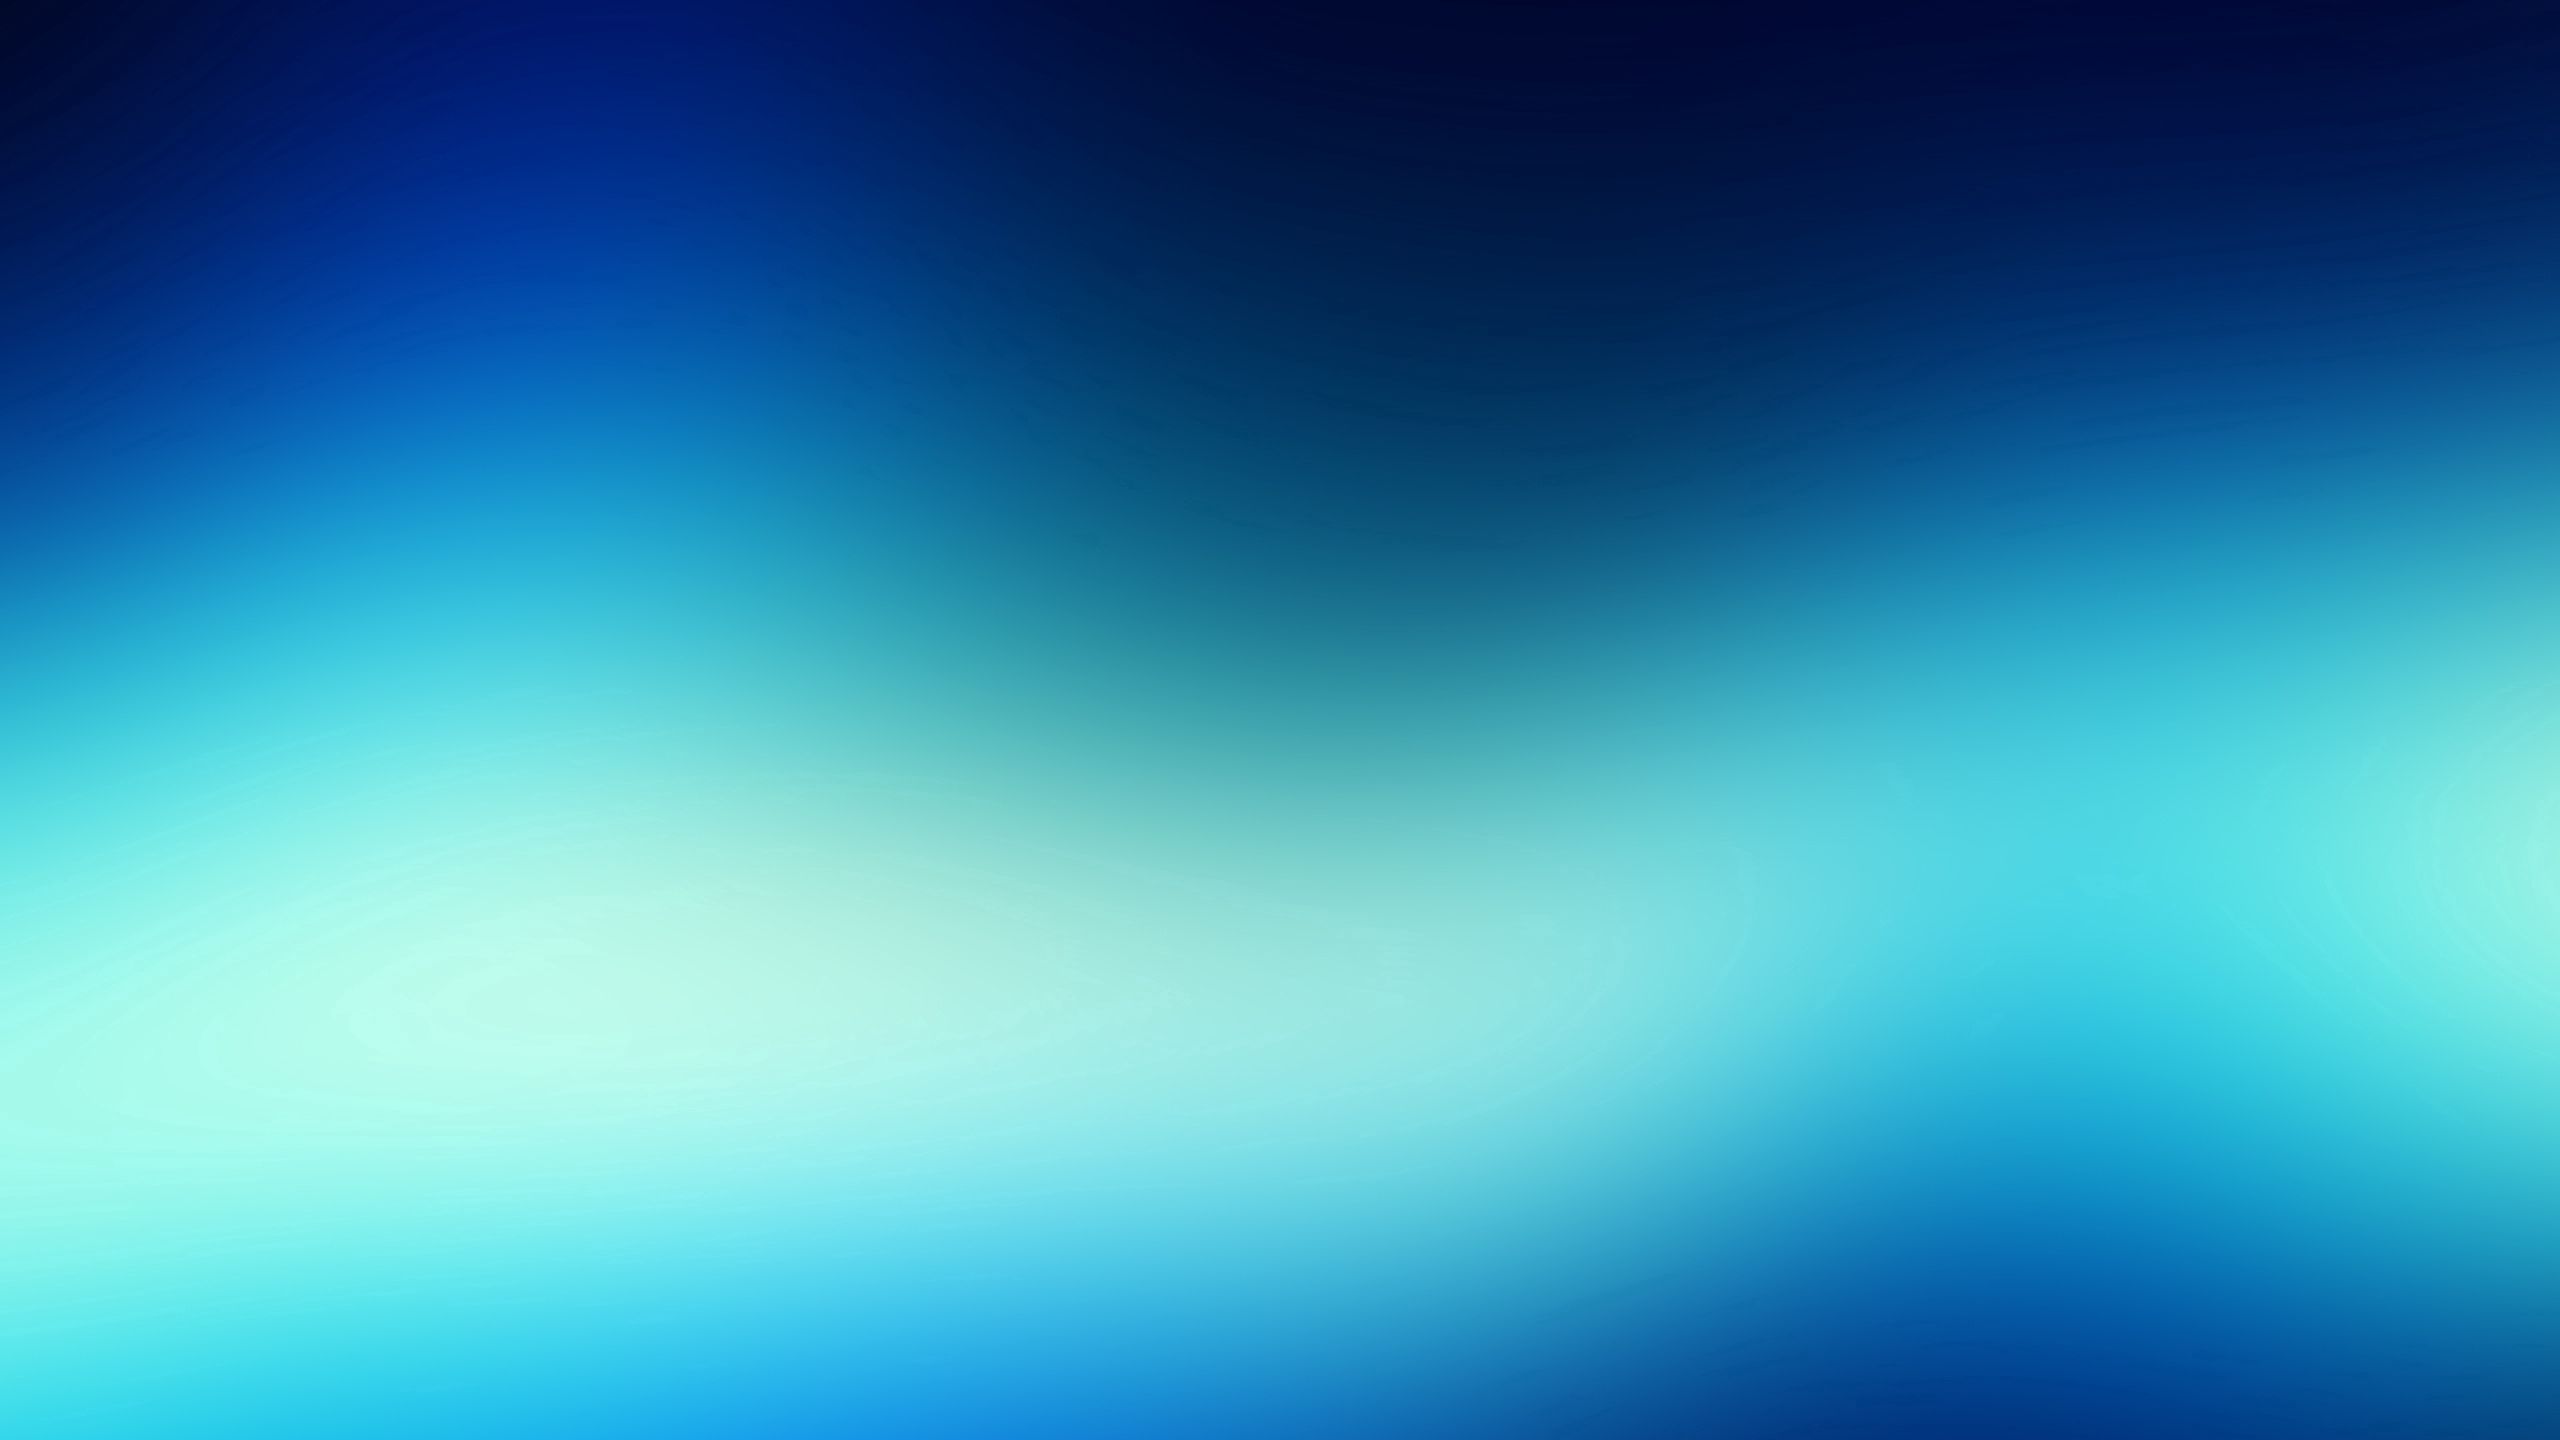 Tải hình nền 2560x1440 với chất liệu, chấm, đường kẻ màu xanh sẽ mang đến cho bạn sự trang nhã và phong cách cho màn hình máy tính của bạn. Xem hình ảnh ngay để trải nghiệm cảm giác thú vị này.